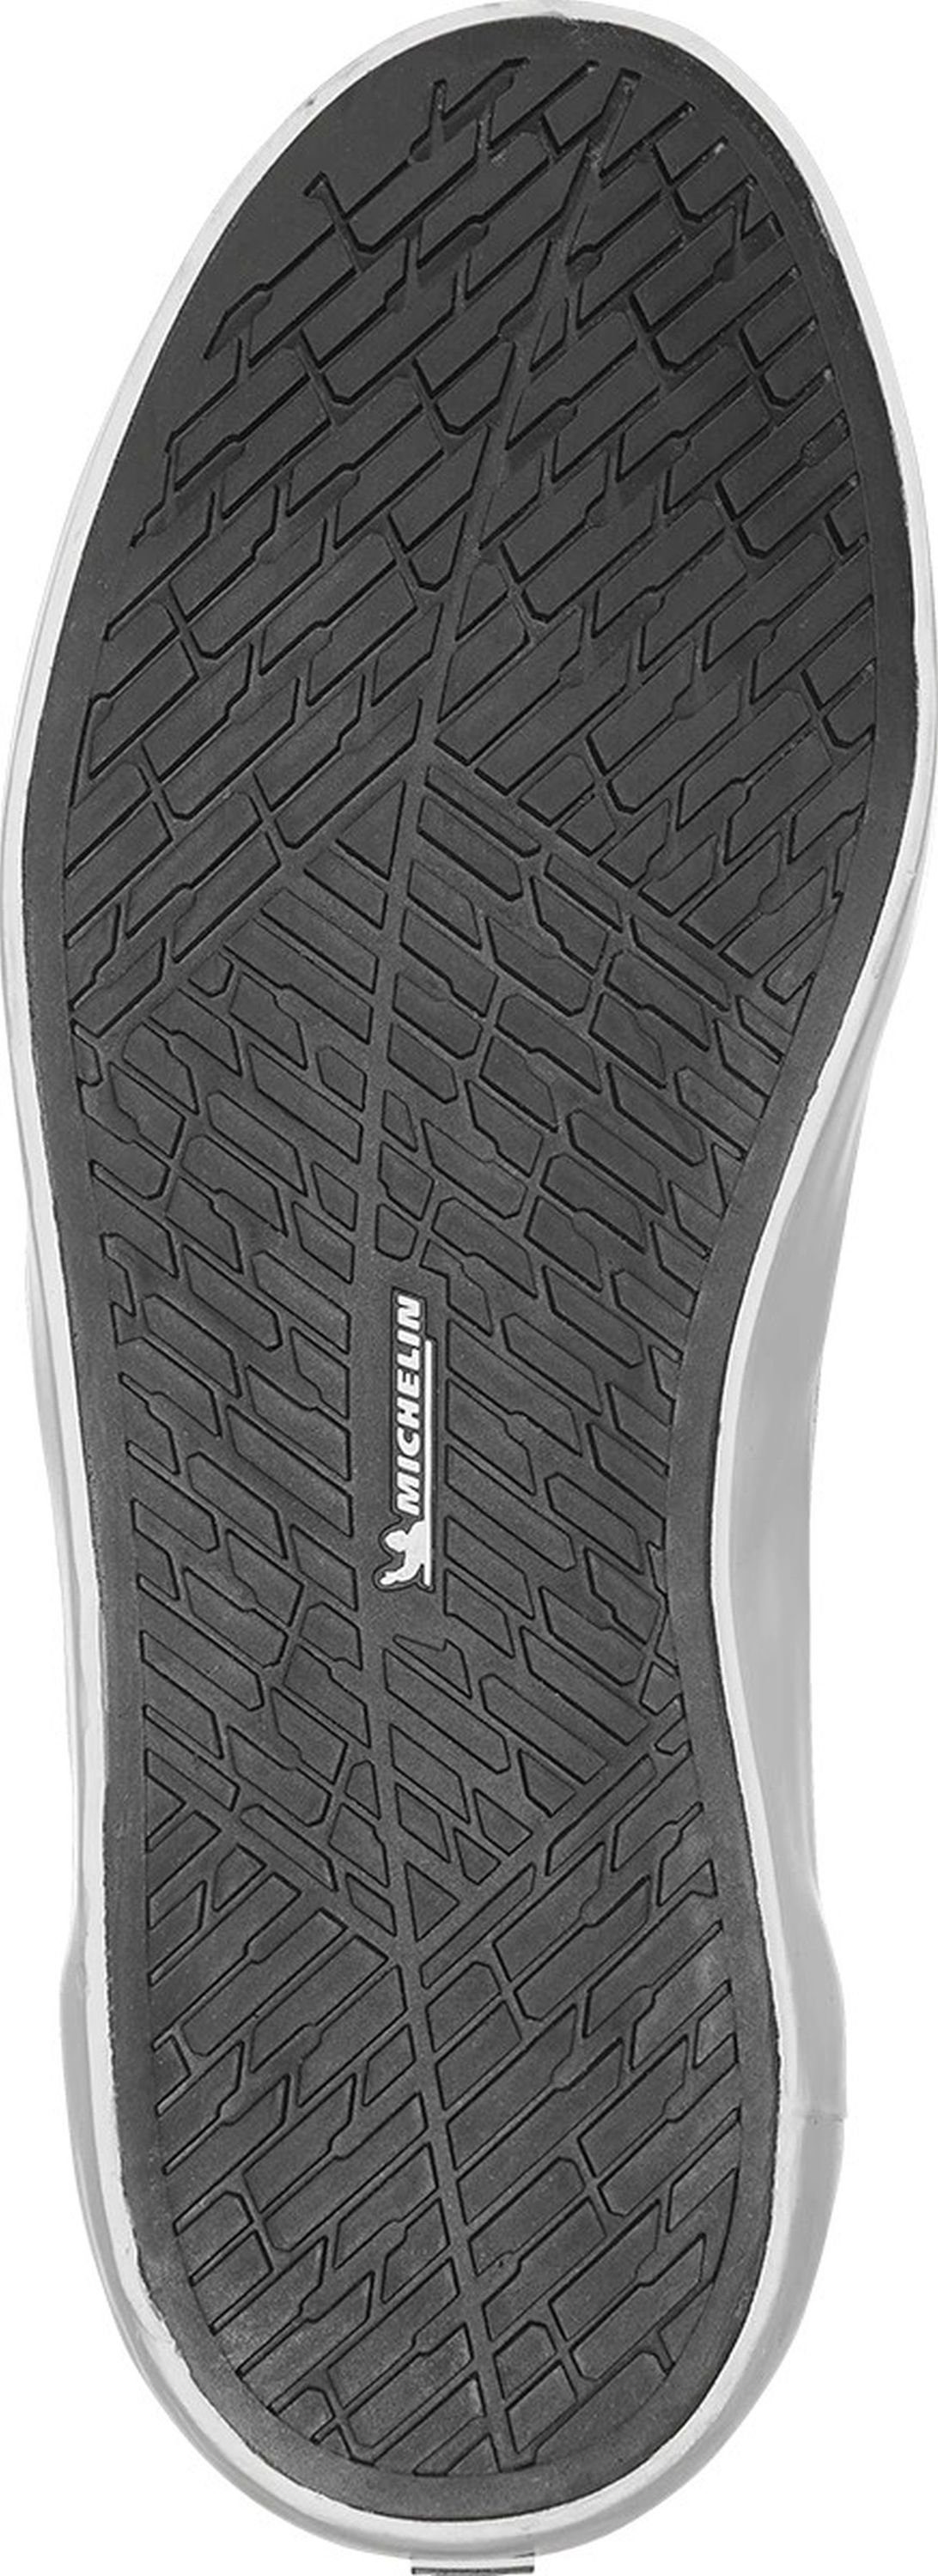 Slip-On MARANA Sneaker XLT4102000141-616 MARANA etnies 4102000141-616 XLT Slipper